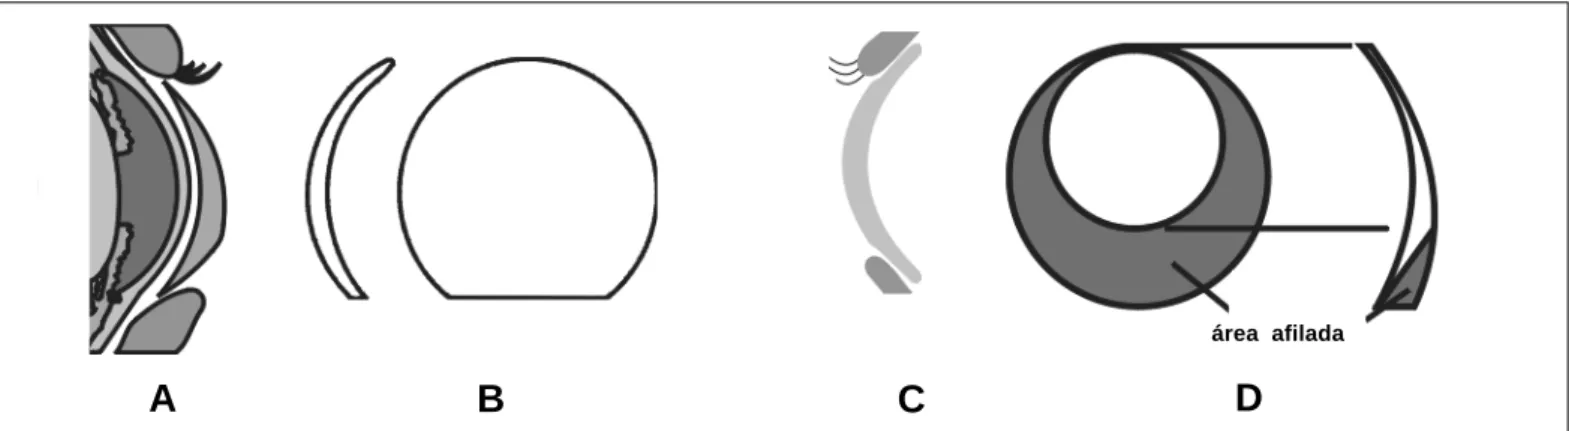 Figura 1 - Desenhos de lentes de contato: A) com prisma de lastro; B) truncada; C) com bordas chanfradas (perfil); D) com lenticulação excêntricaárea afilada